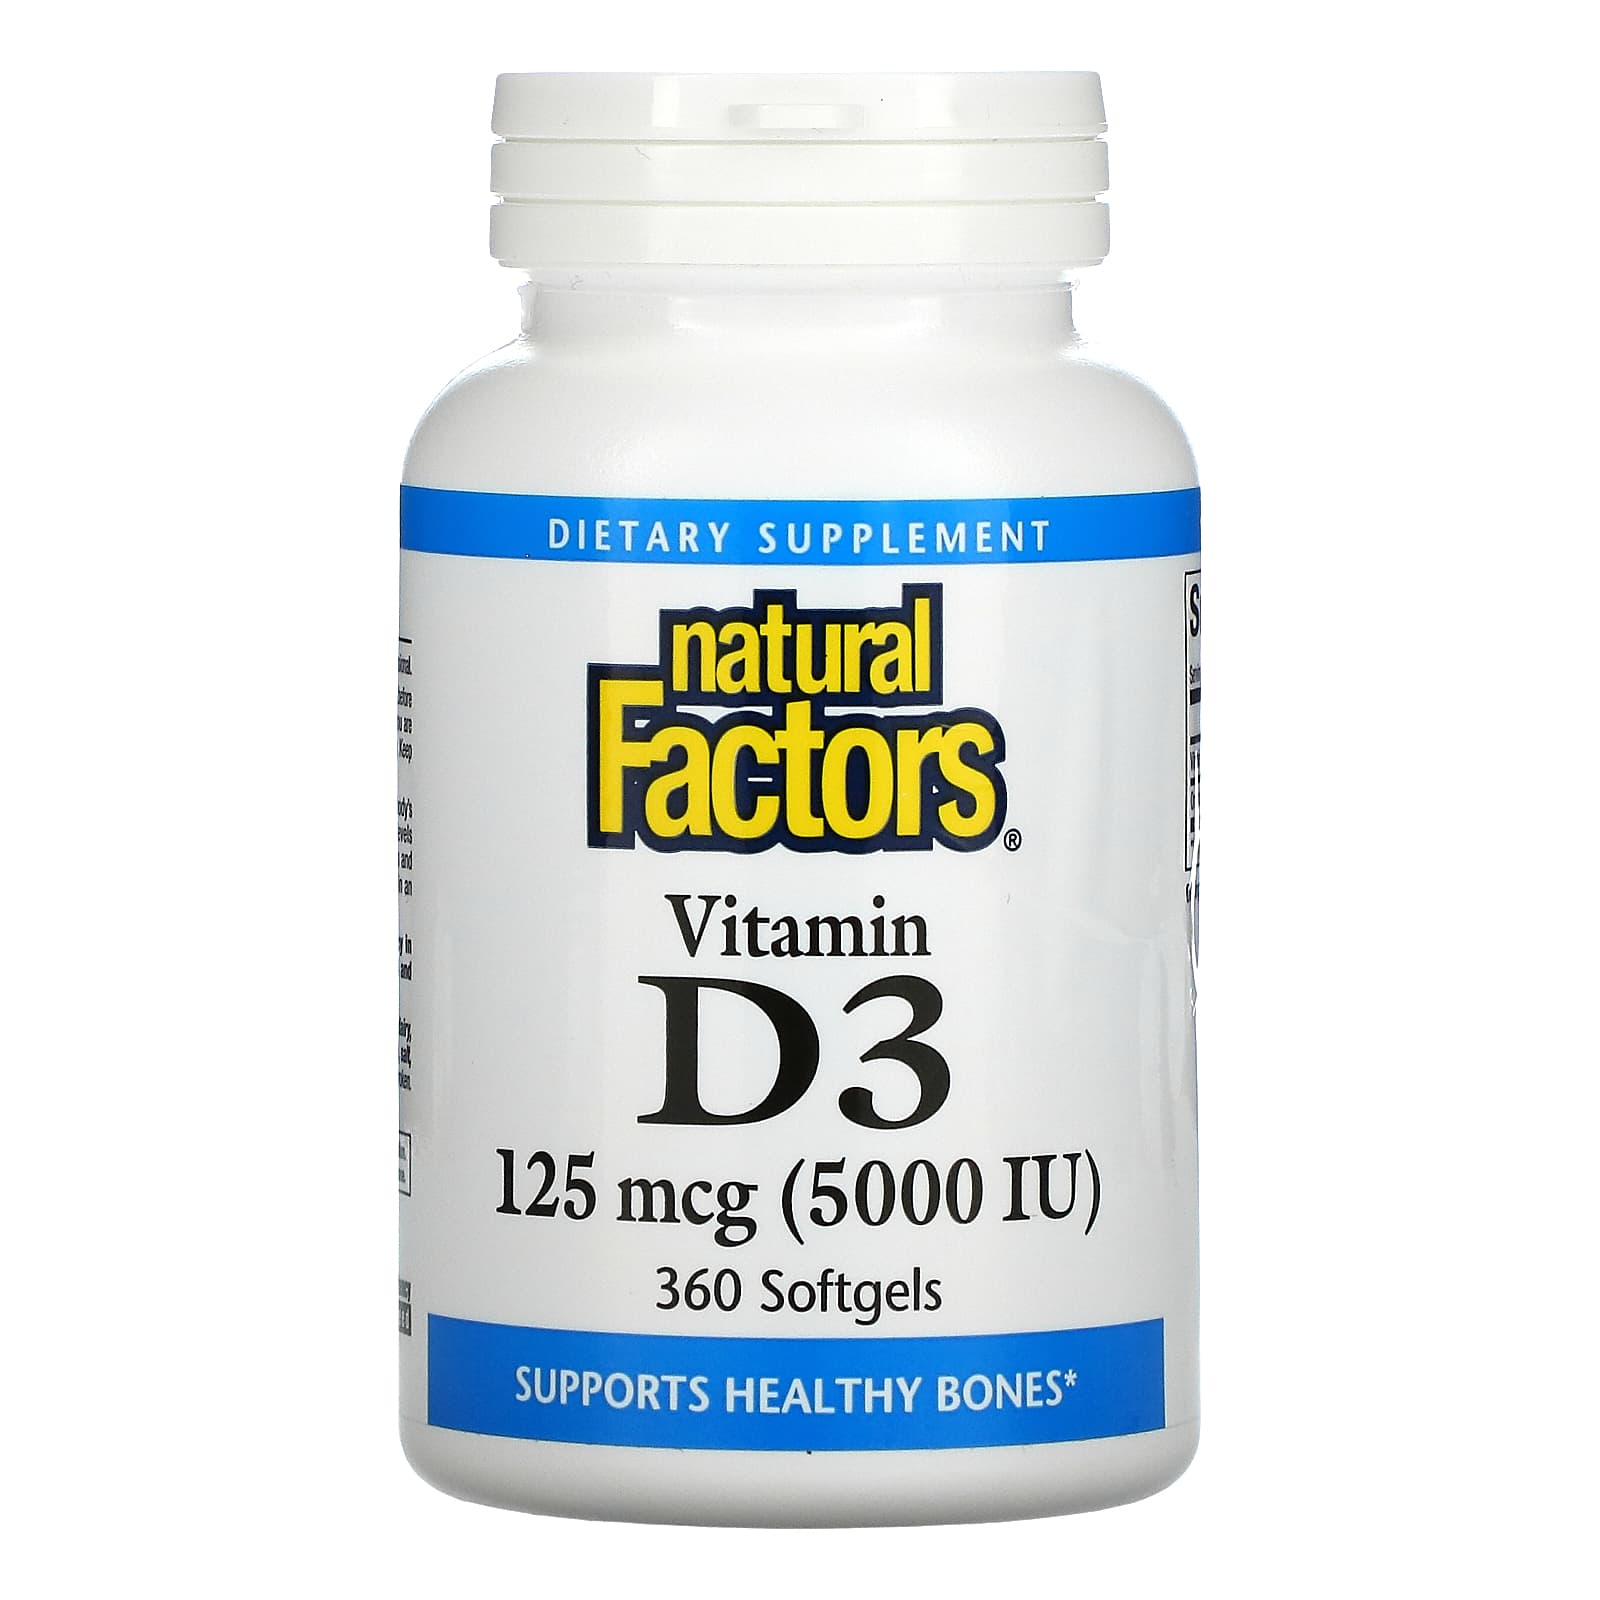 Natural Factors Vitamin D3 125 Mcg 5, 000 IU), 360 Softgels